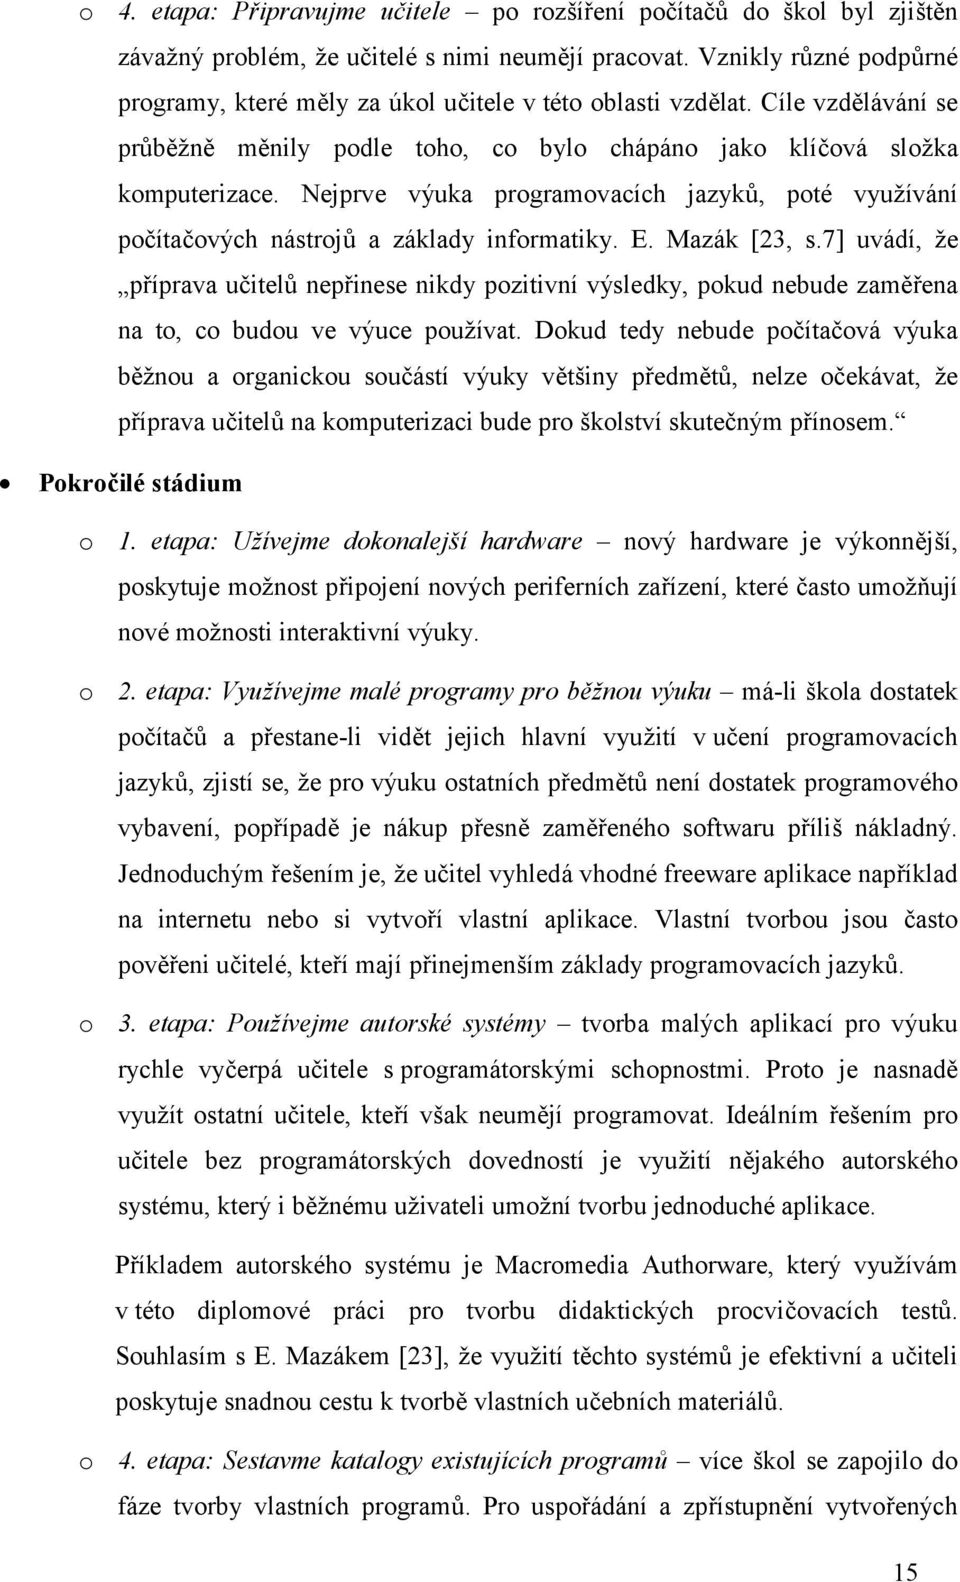 Nejprve výuka programovacích jazyků, poté využívání počítačových nástrojů a základy informatiky. E. Mazák [23, s.